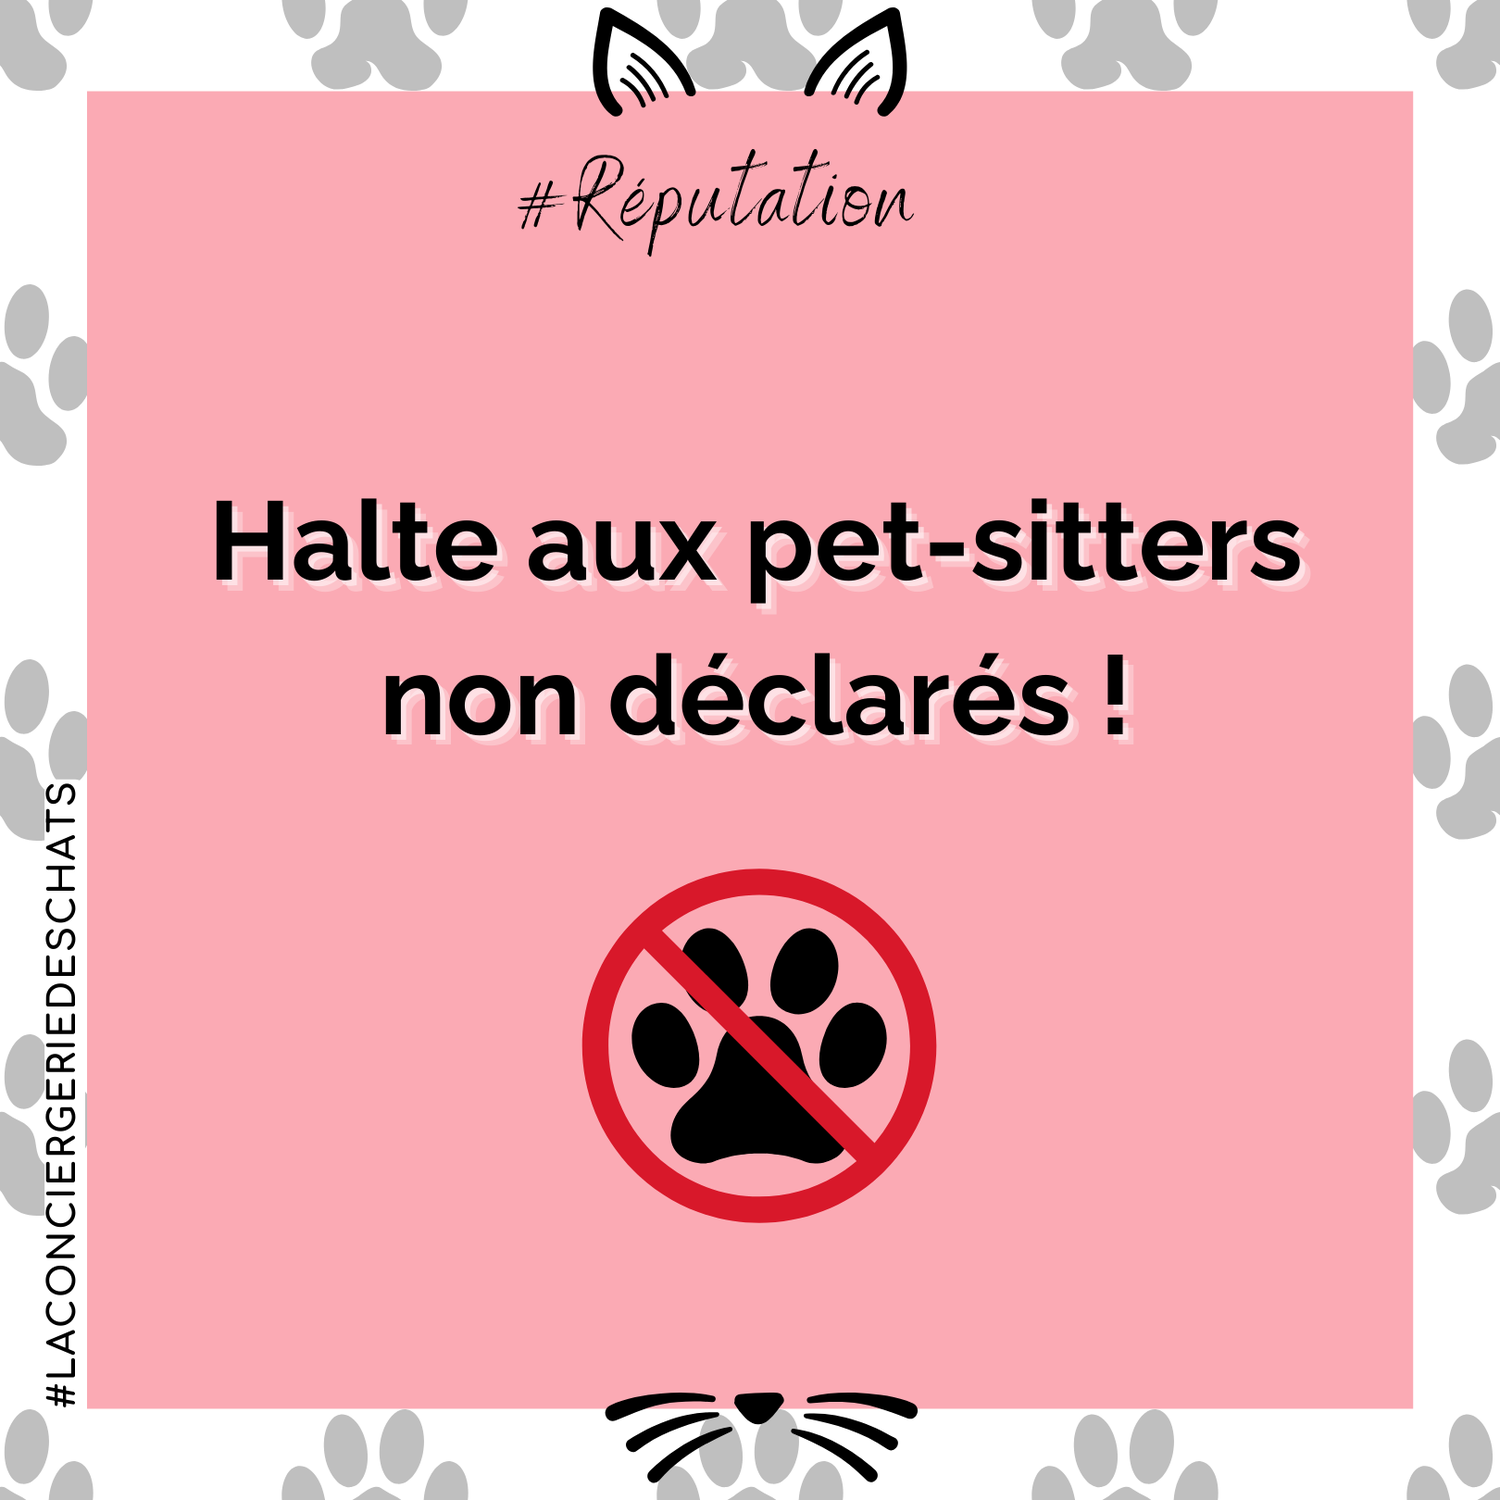 Halte aux pet-sitters non déclarés !